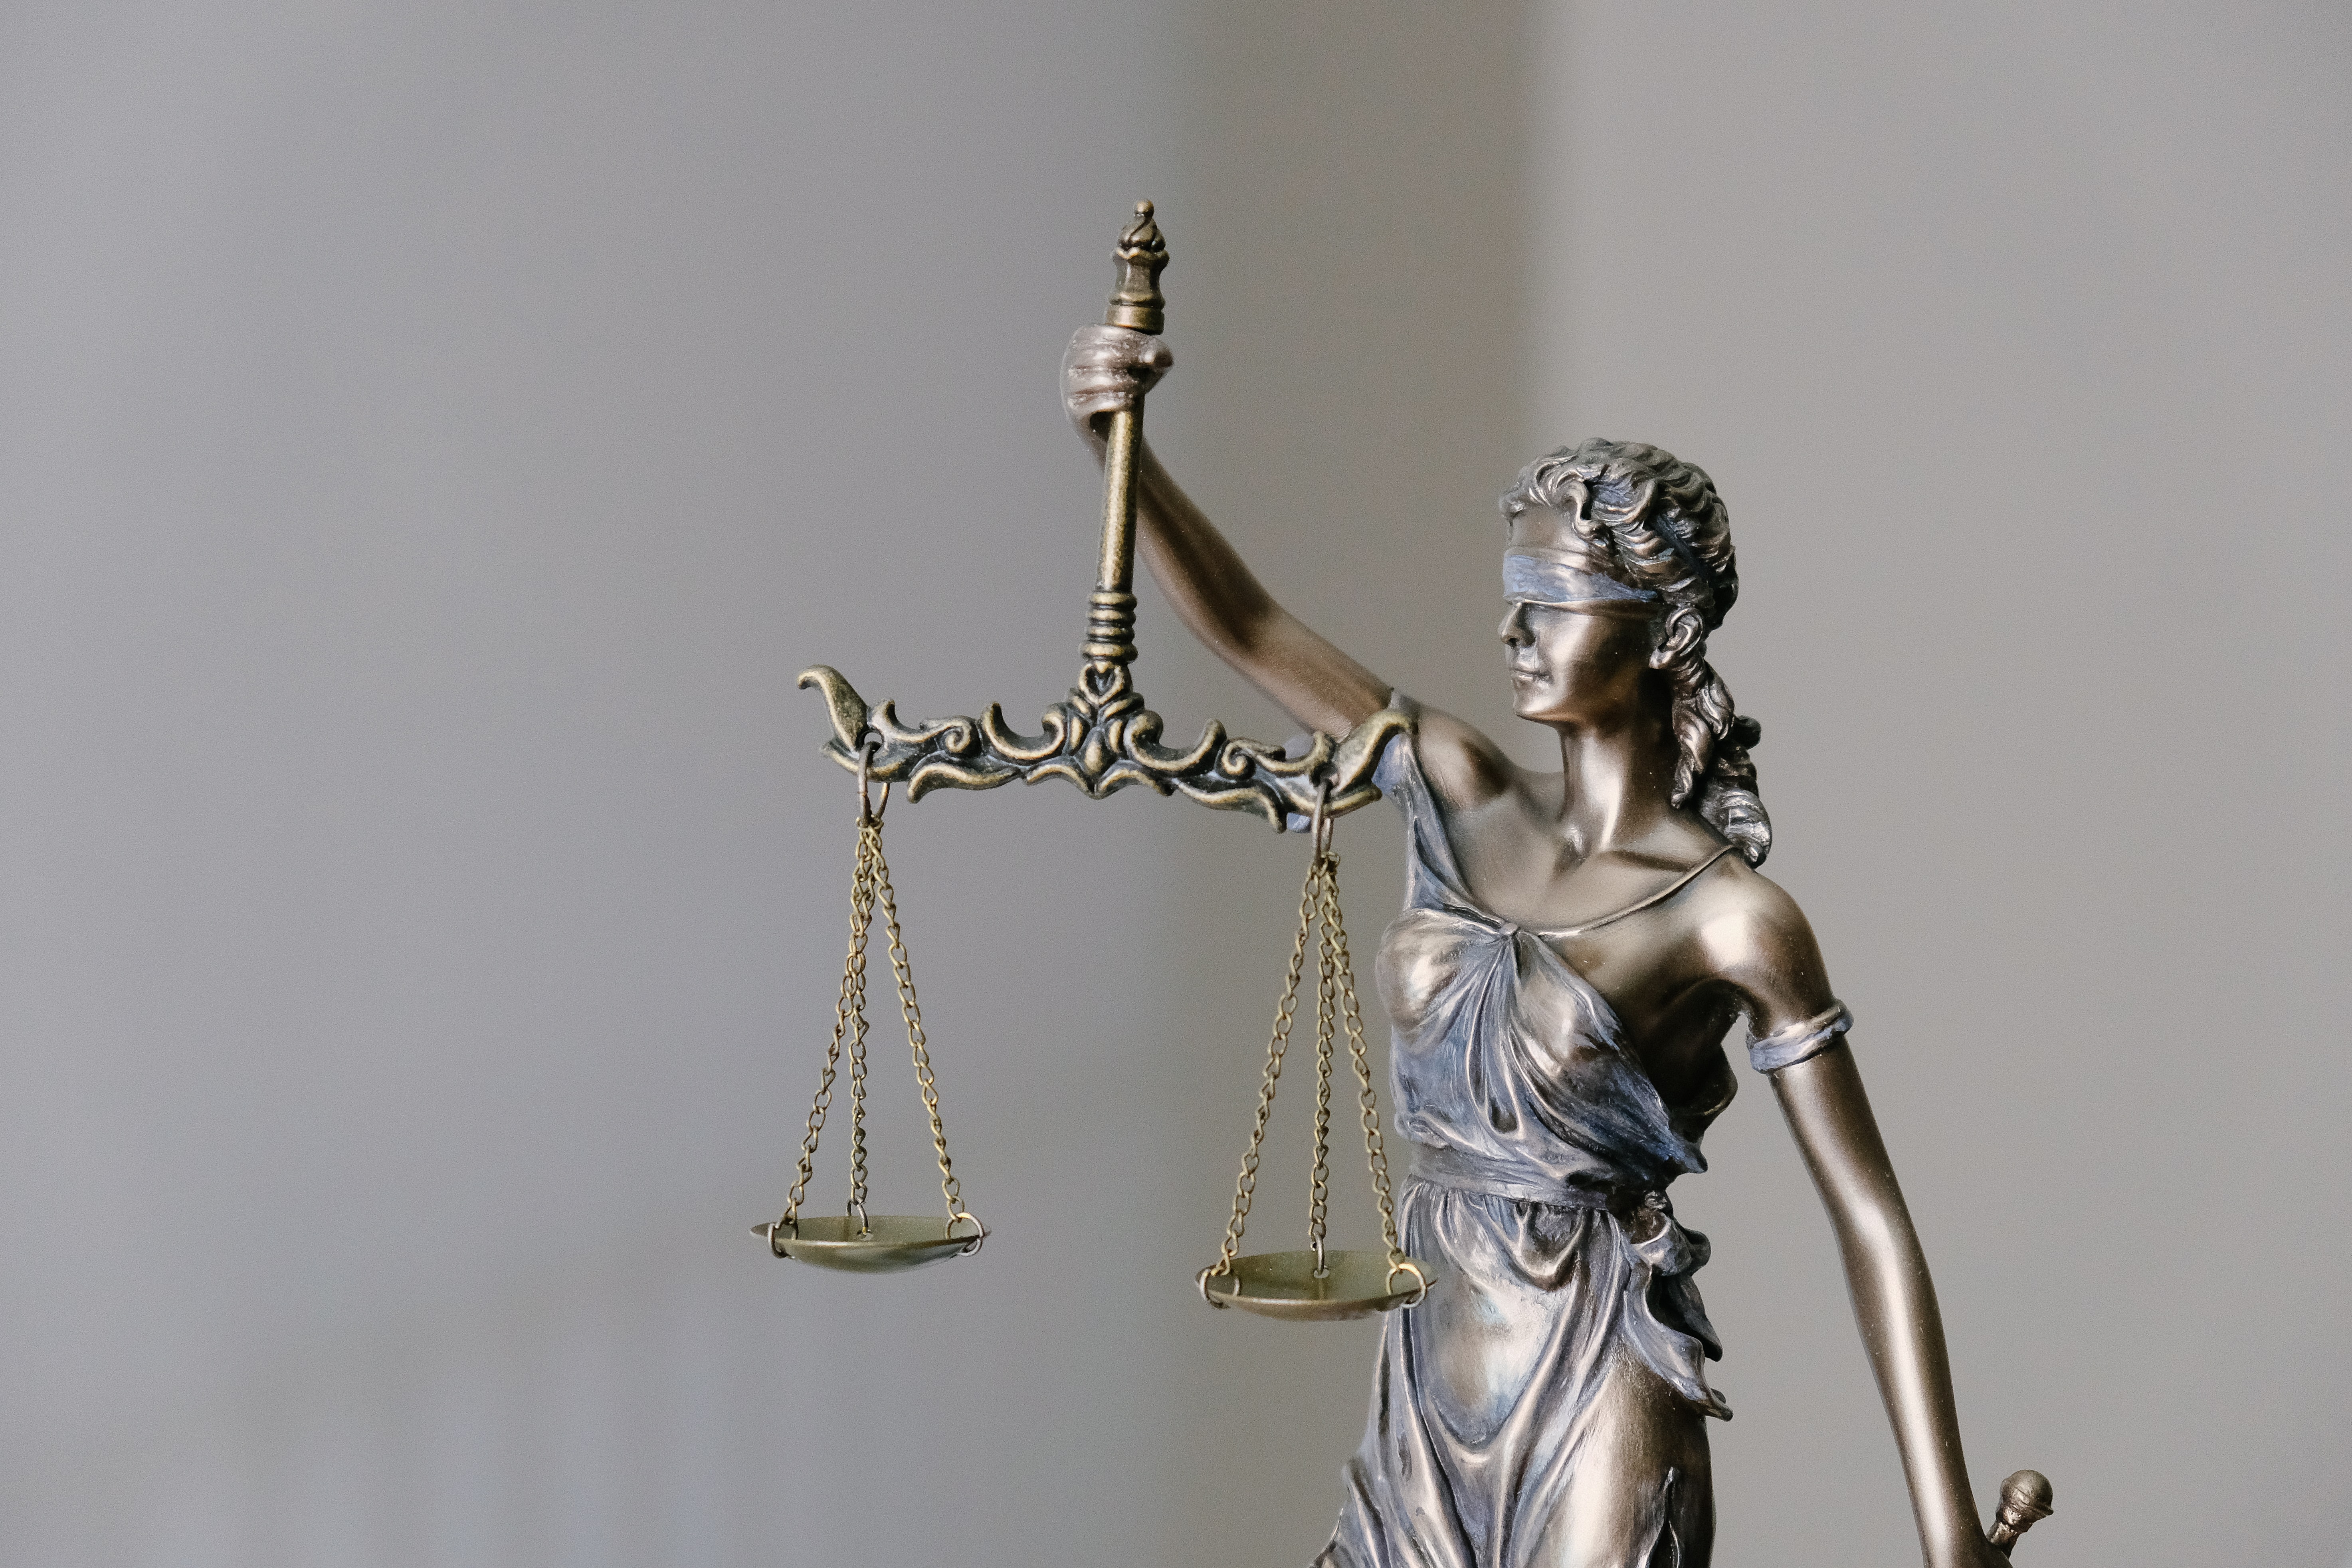  Tra giustizia e politica: il meccanismo del “referral”